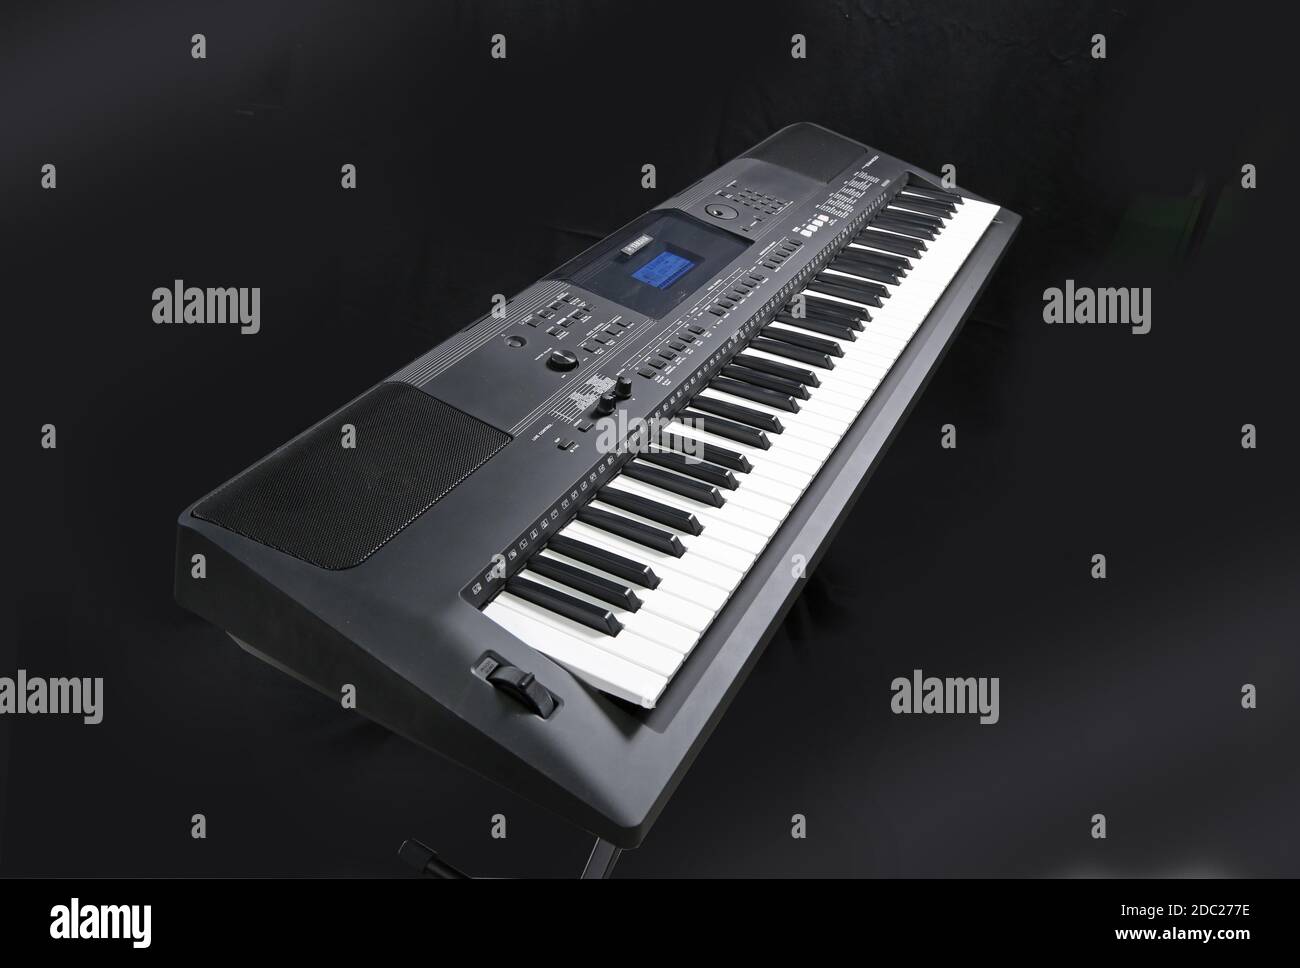 Studioaufnahme einer elektronischen Tastatur von Yamaha; Modell PSR EW400 auf einem klappbaren X-Frame-Ständer aus Metall. Stockfoto